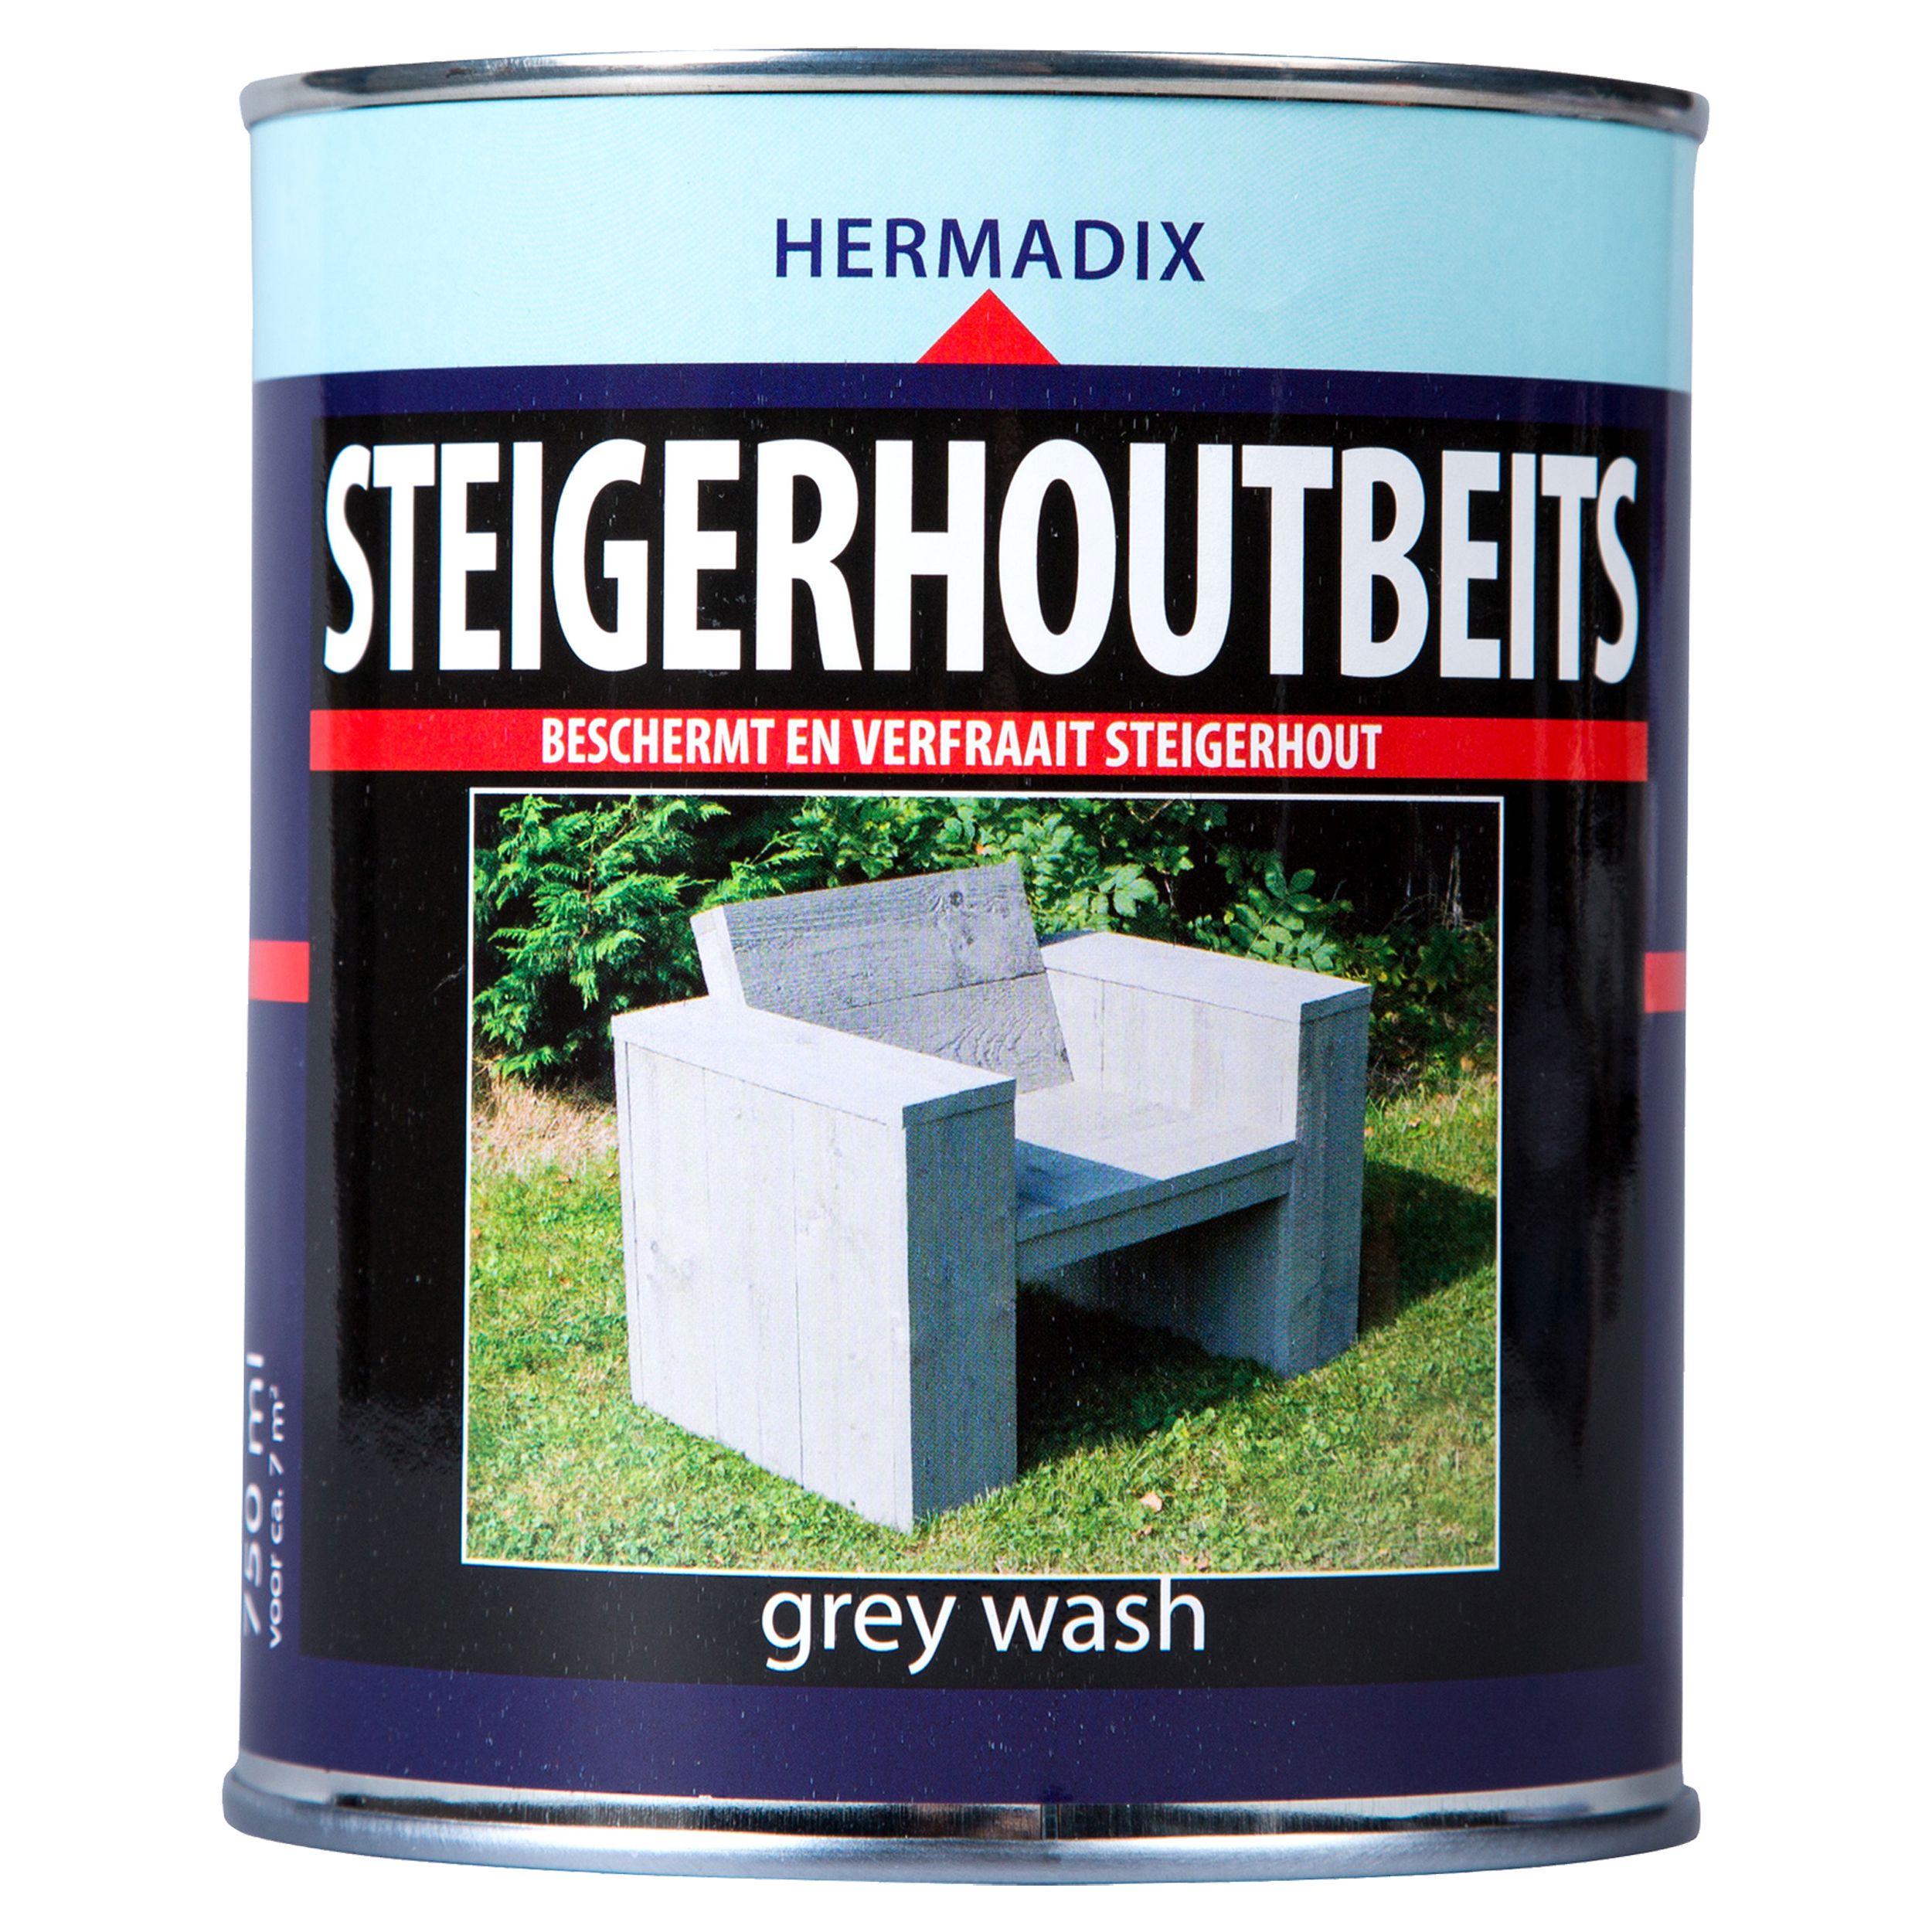 Steigerhoutbeits grey wash